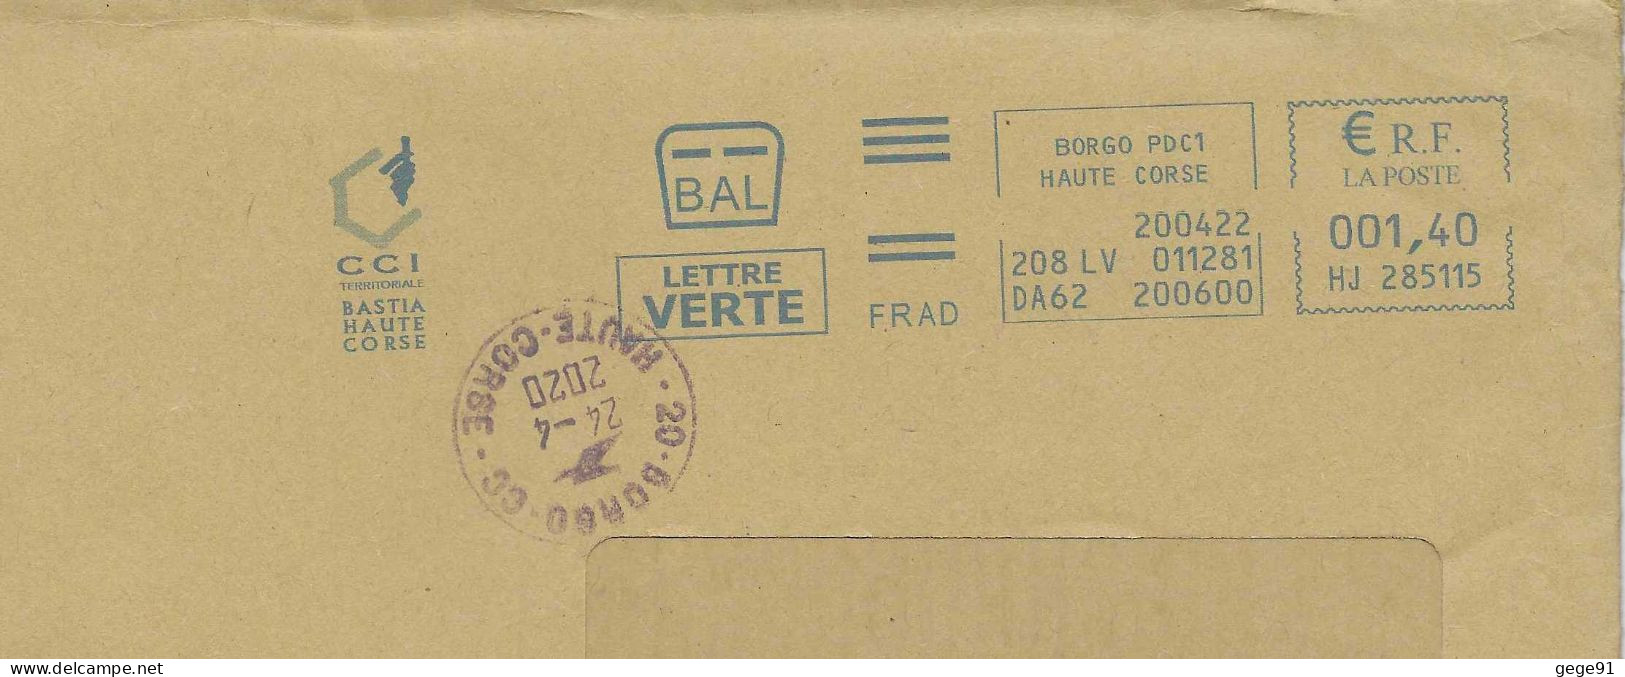 Ema Neopost HJ - Carte De La Corse - Cachet Manuel De Borgo Pour Correction De Date - Enveloppe Réduite 220x110 - Geographie